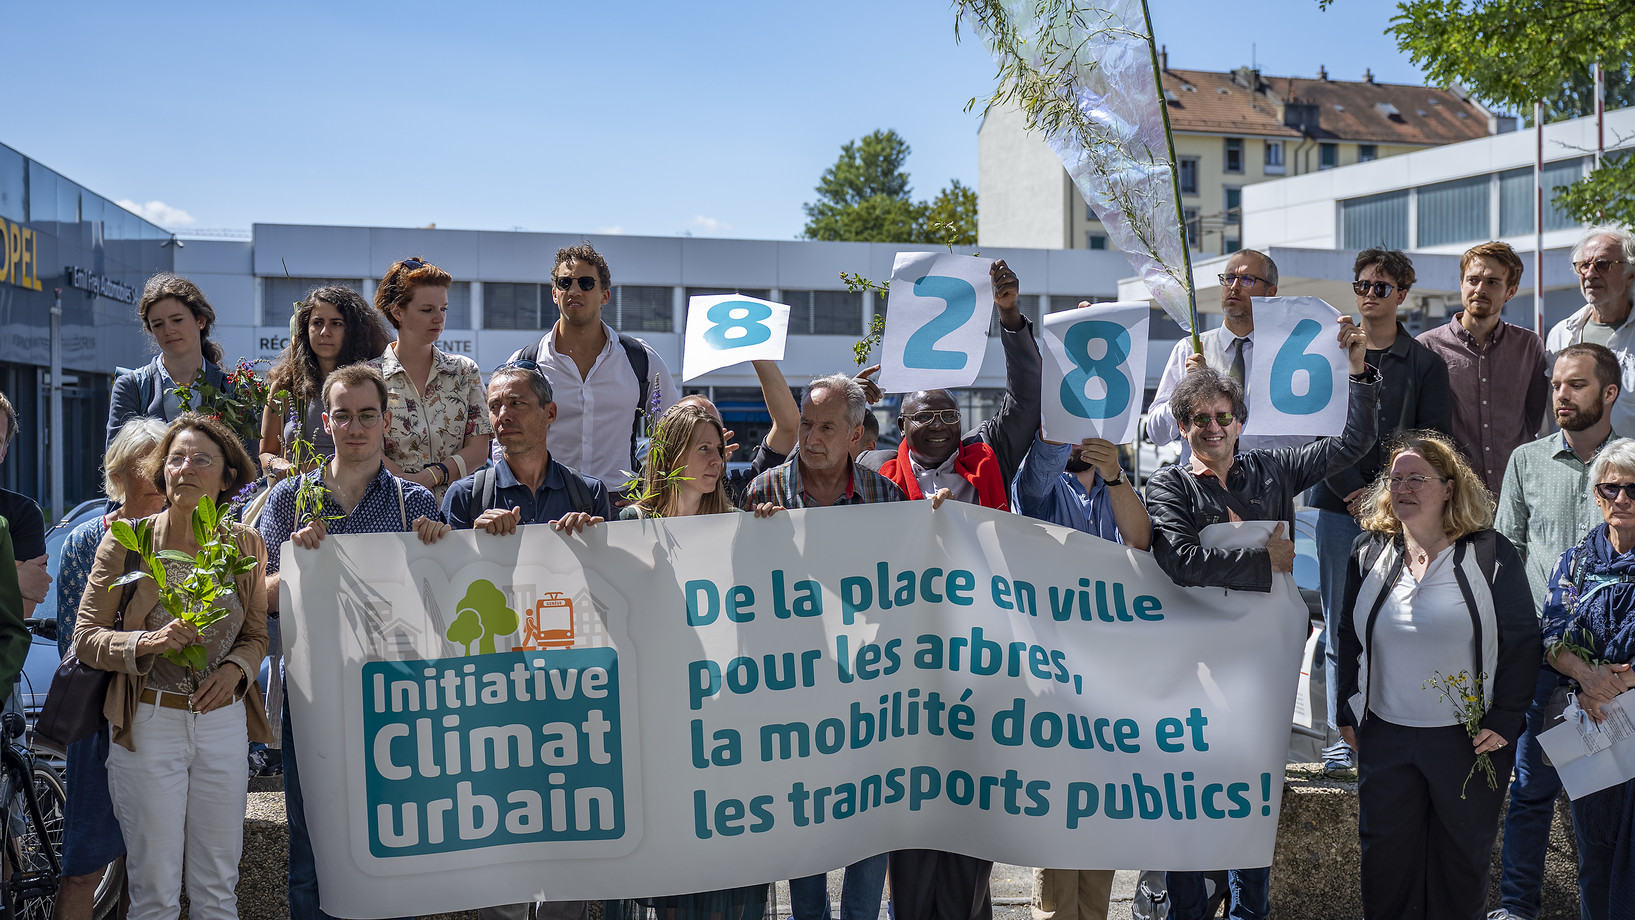 Initiative « Climat urbain » à Genève